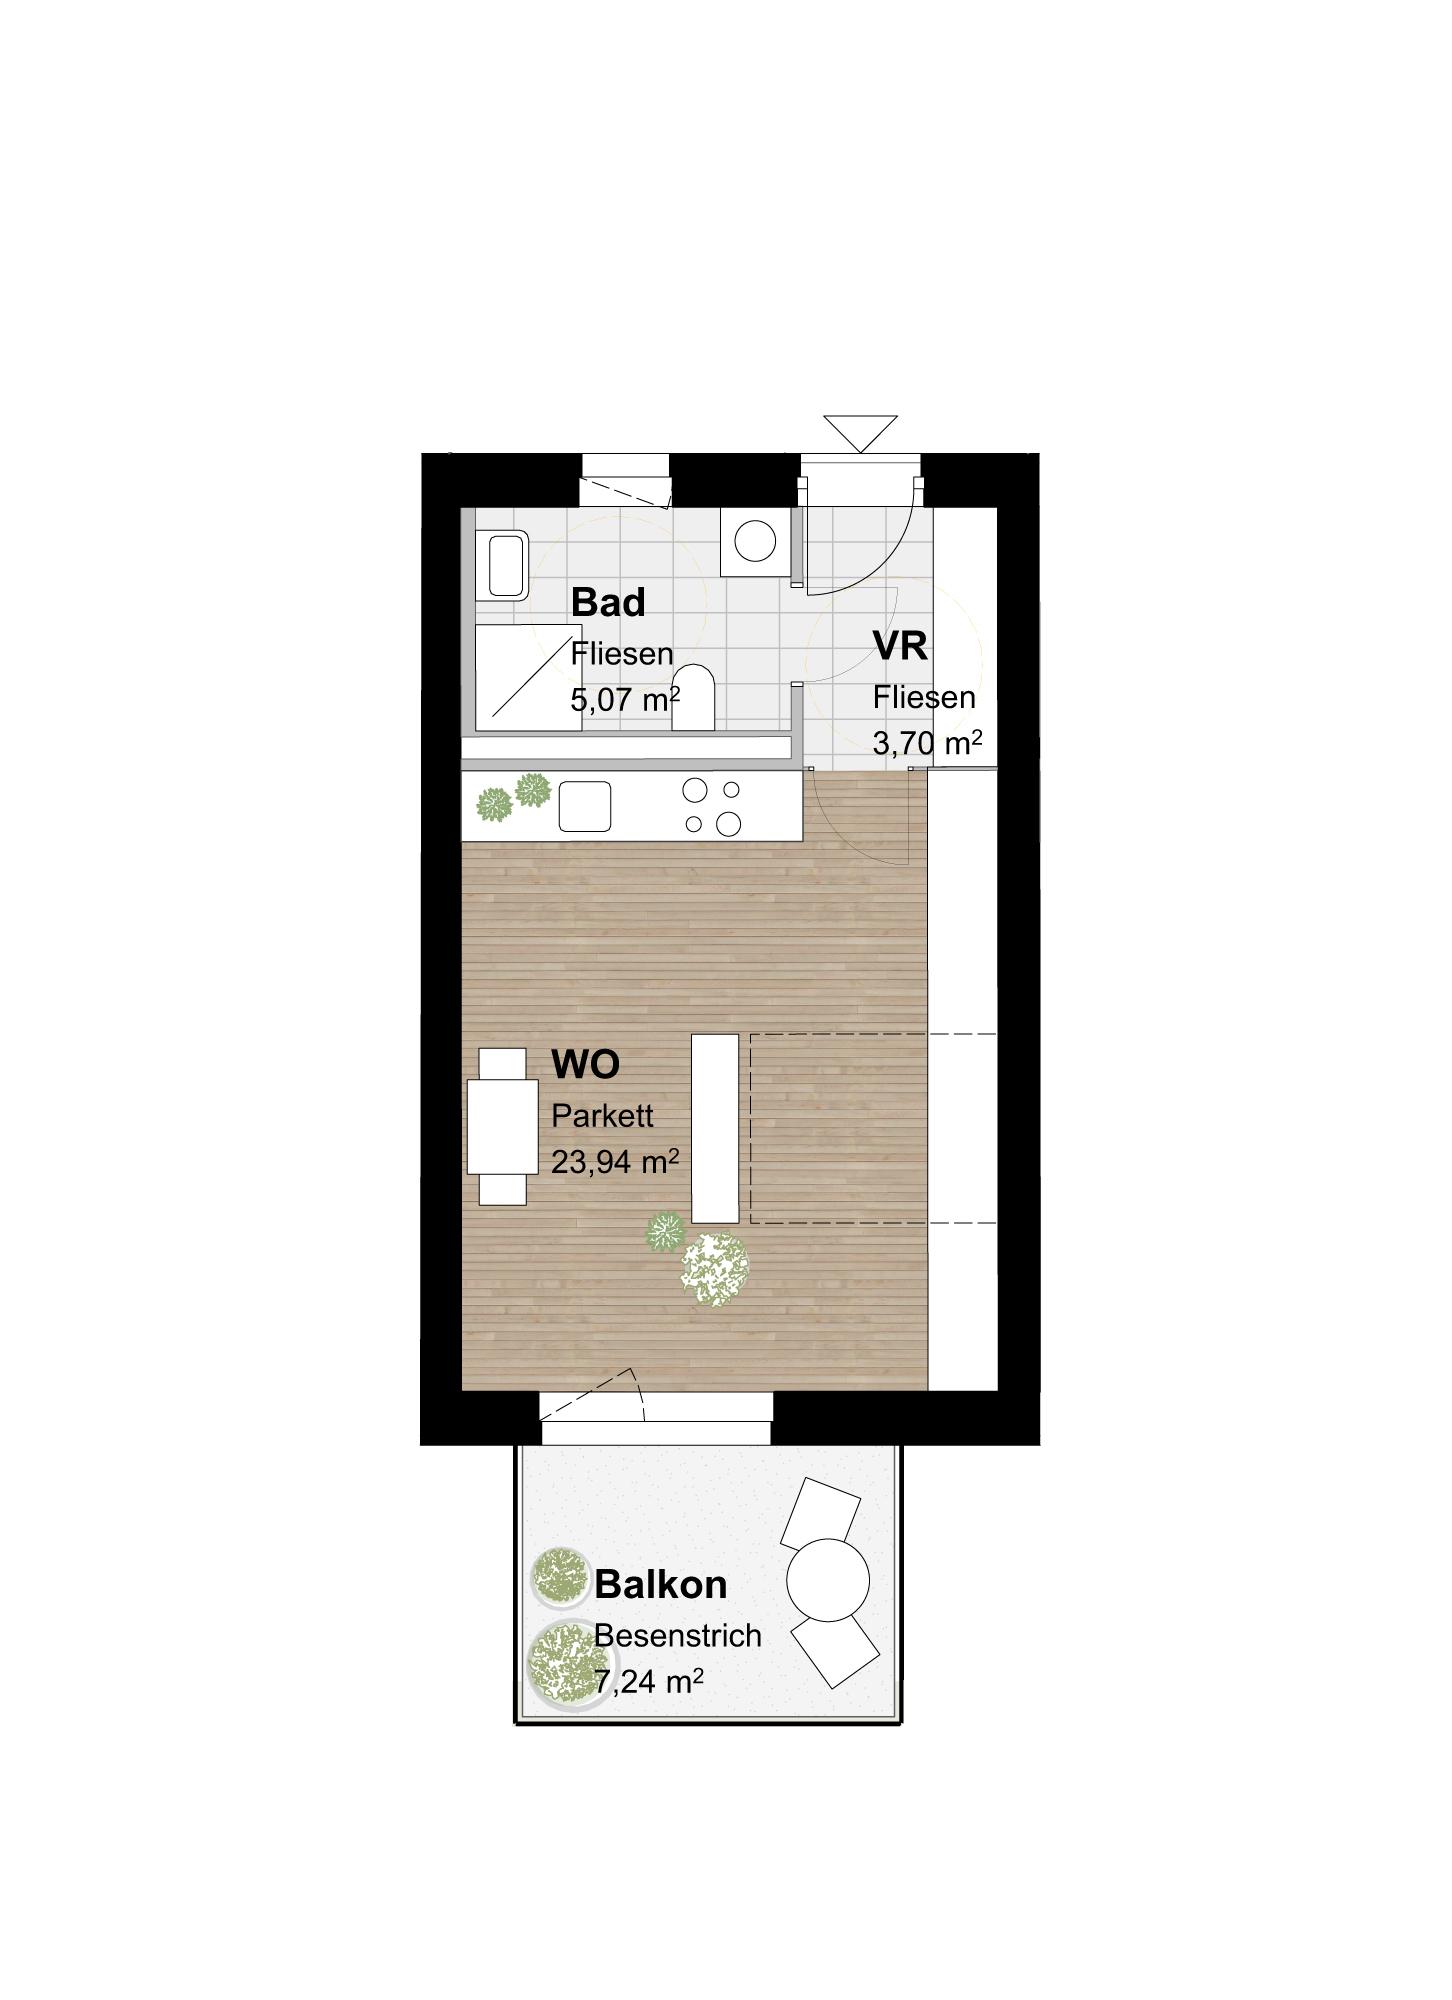 Einladende 1-Zimmer-Wohnung mit Balkon: Gemütlichkeit trifft auf praktische Eleganz!"